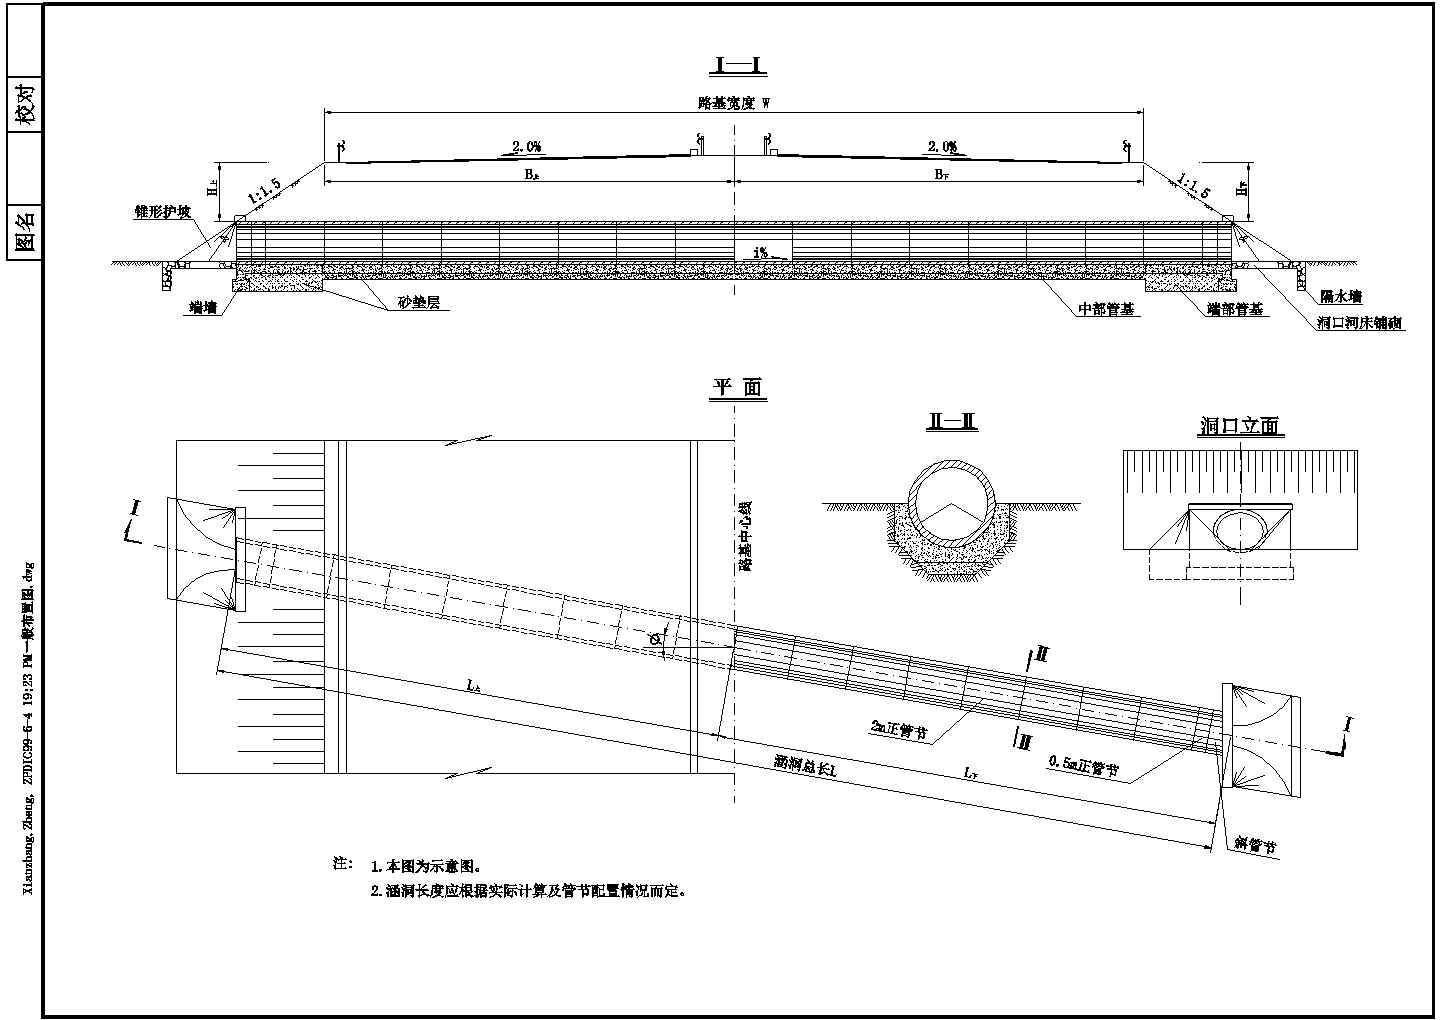 钢筋混凝土圆管涵-一般布置图（适合可研阶段）